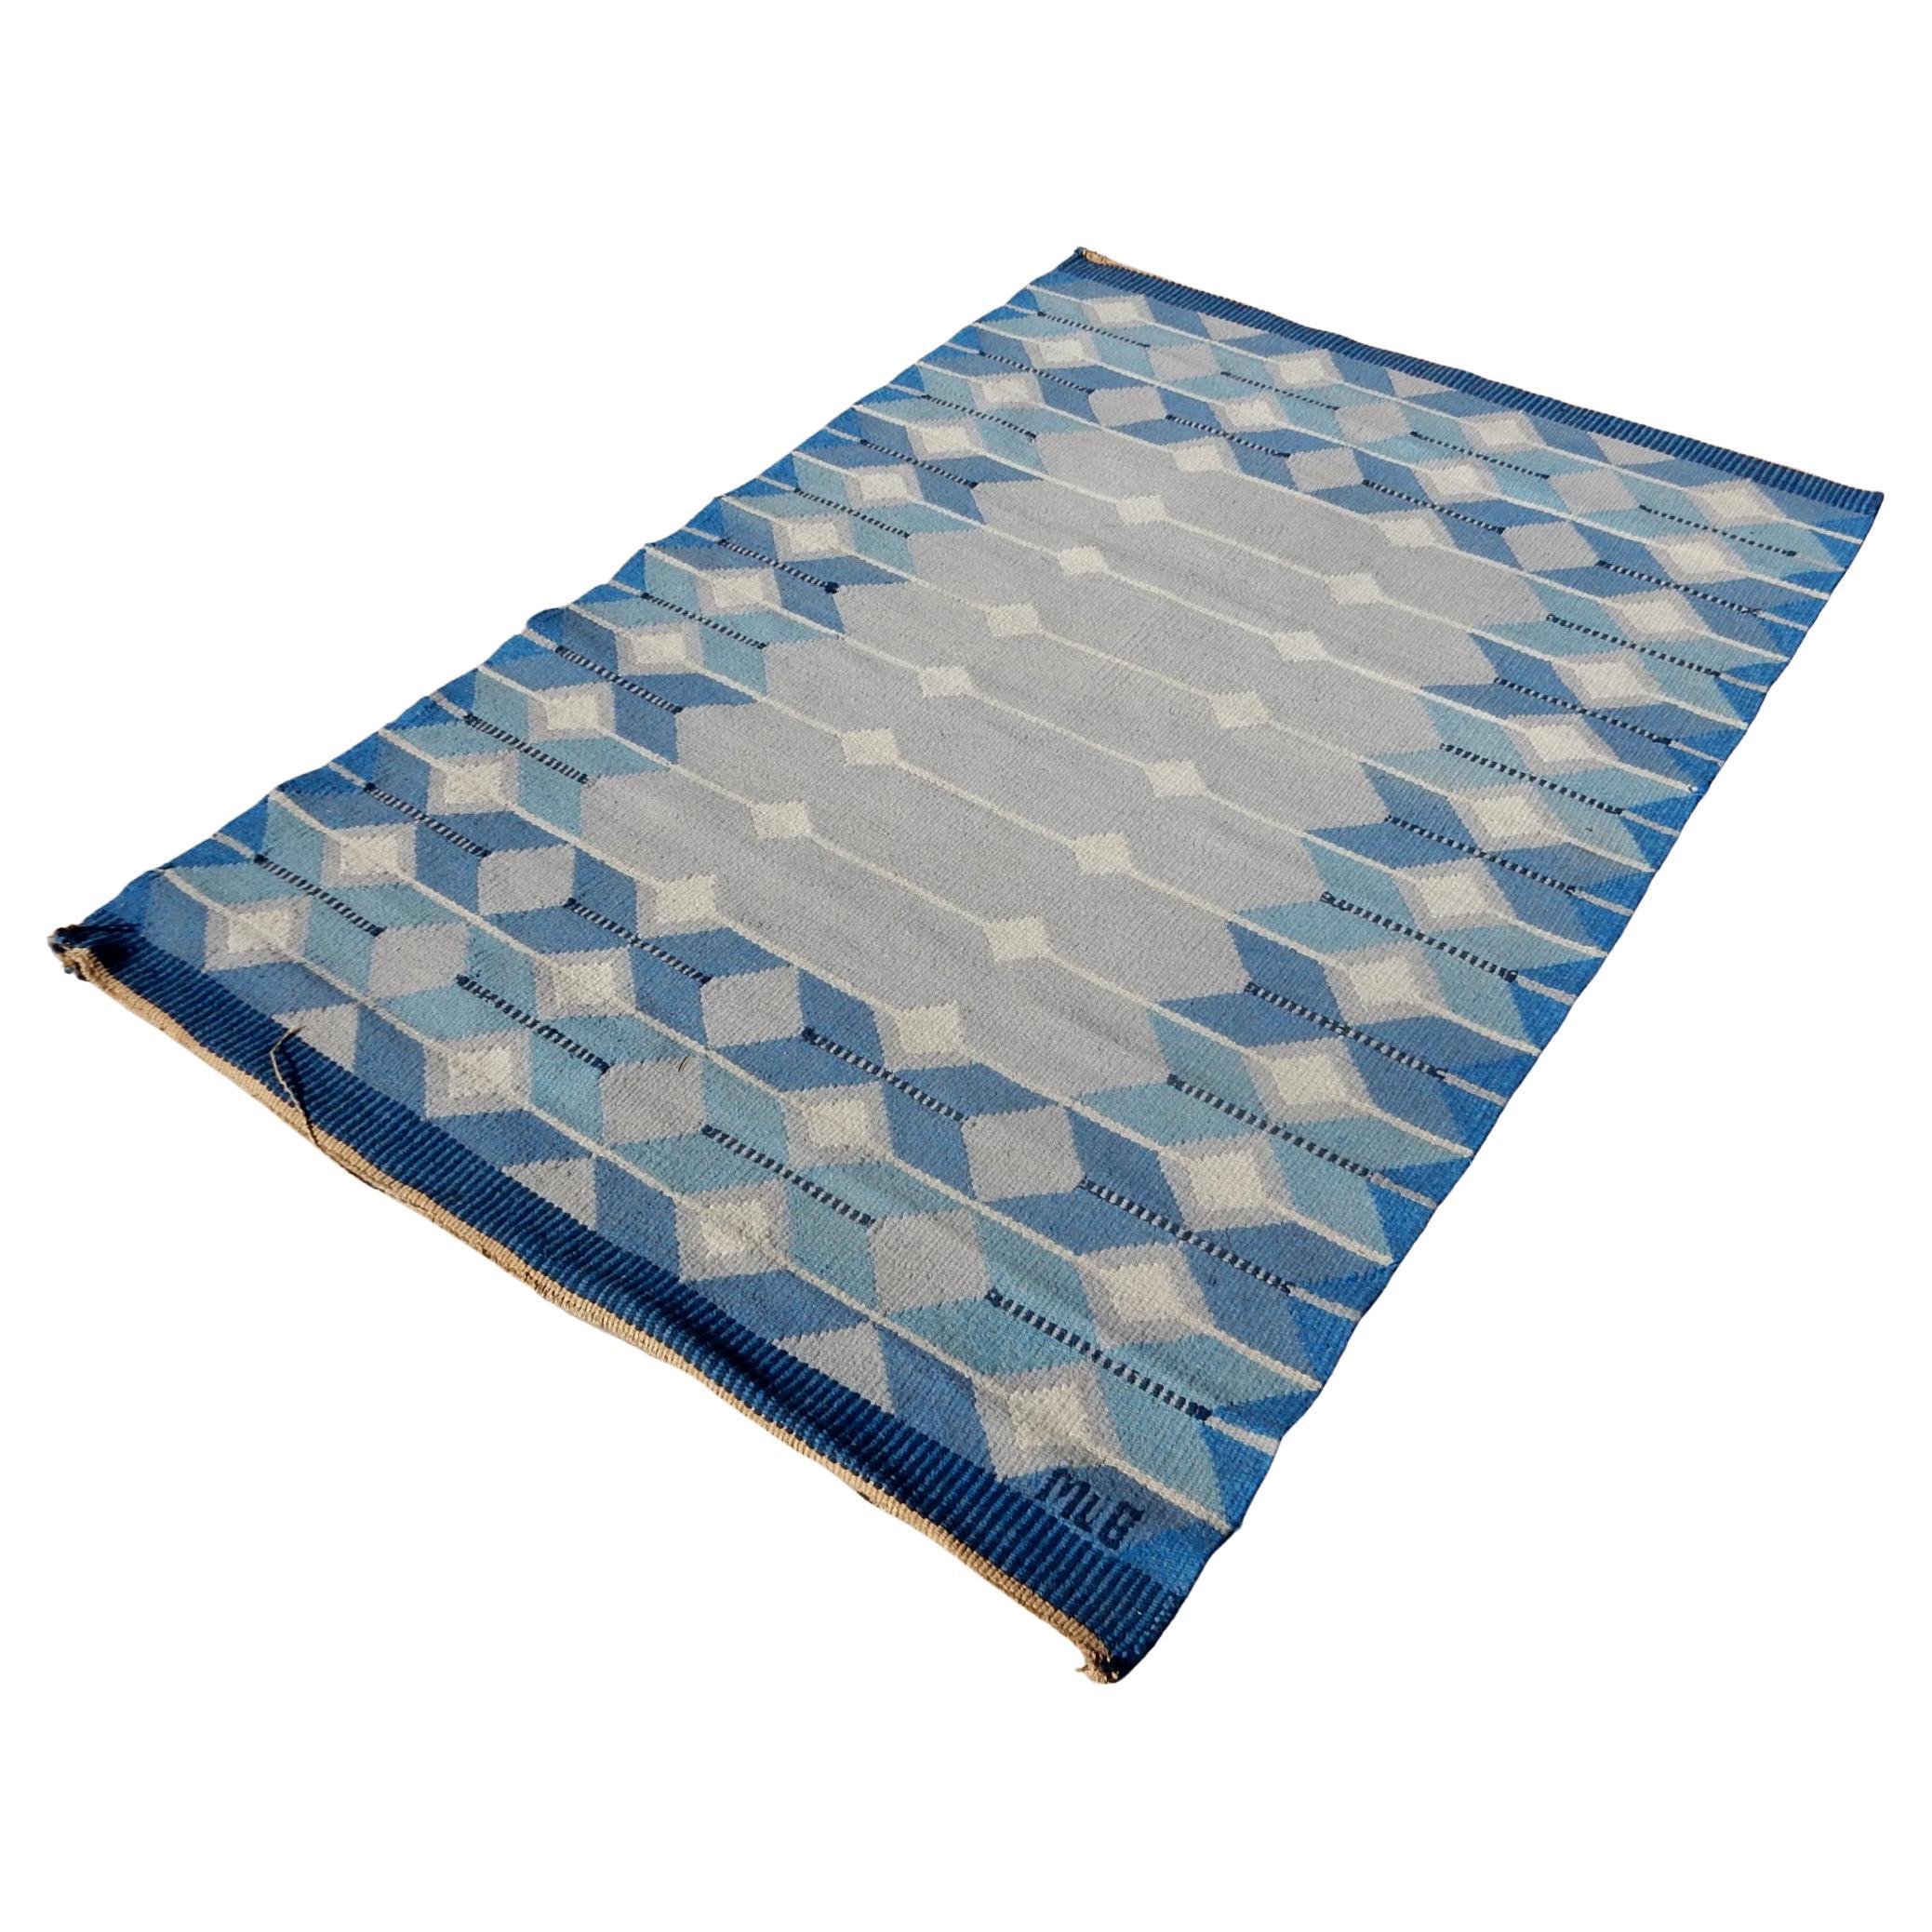 Exceptionnel tapis Kilim suédois à tissage plat.
De superbes bleus et blancs dans un design géométrique fascinant.
Signé par le tisserand 